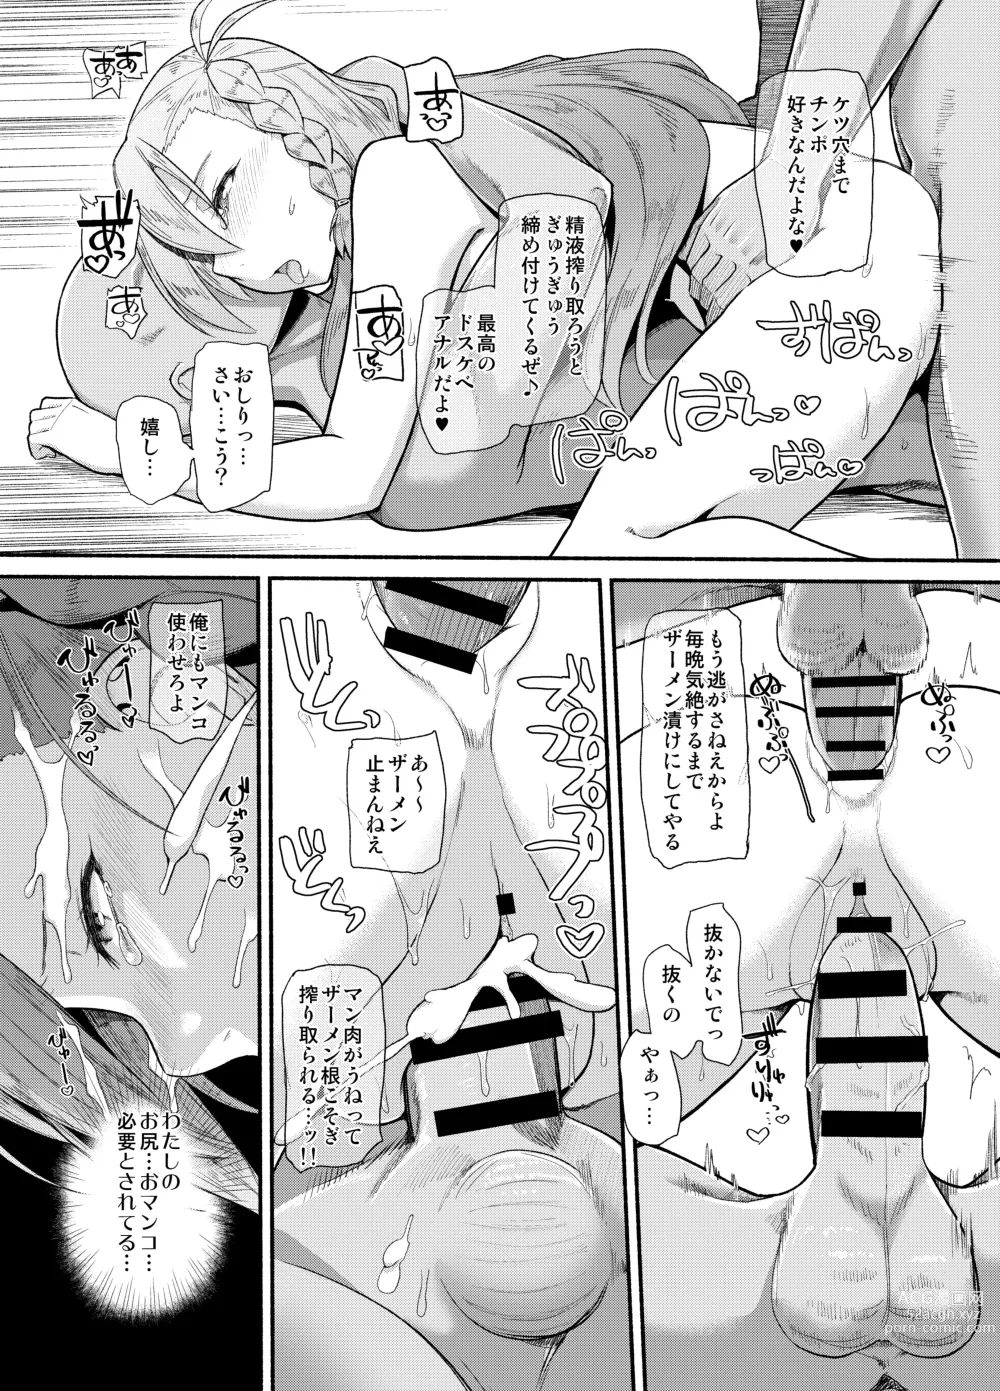 Page 12 of doujinshi Sentei Jishou dakara Hazukashikunai mon